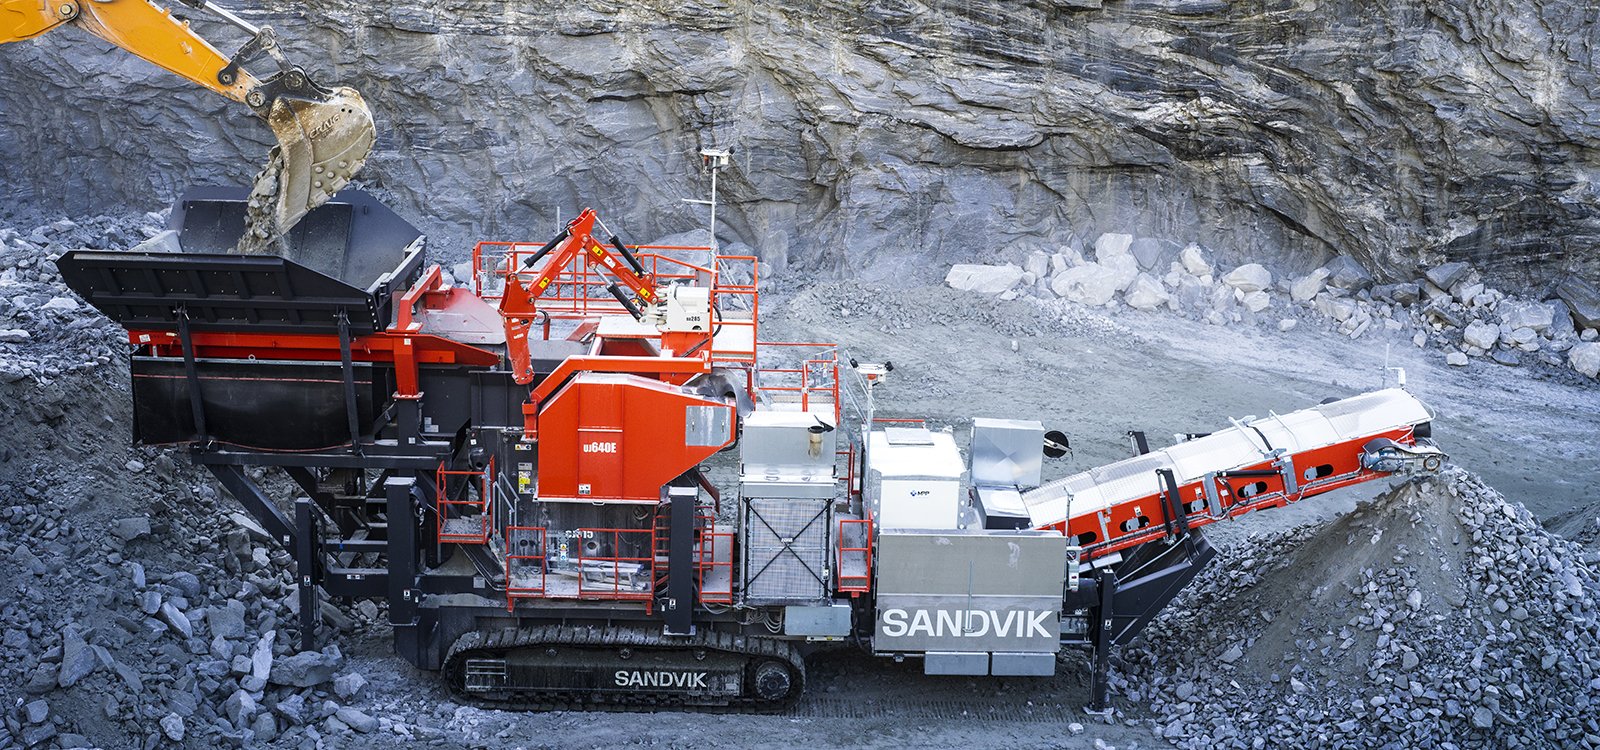 La Sandvik UJ640 incorpora una tolva alimentadora opcional de 18 metros cúbicos para agilizar la carga.